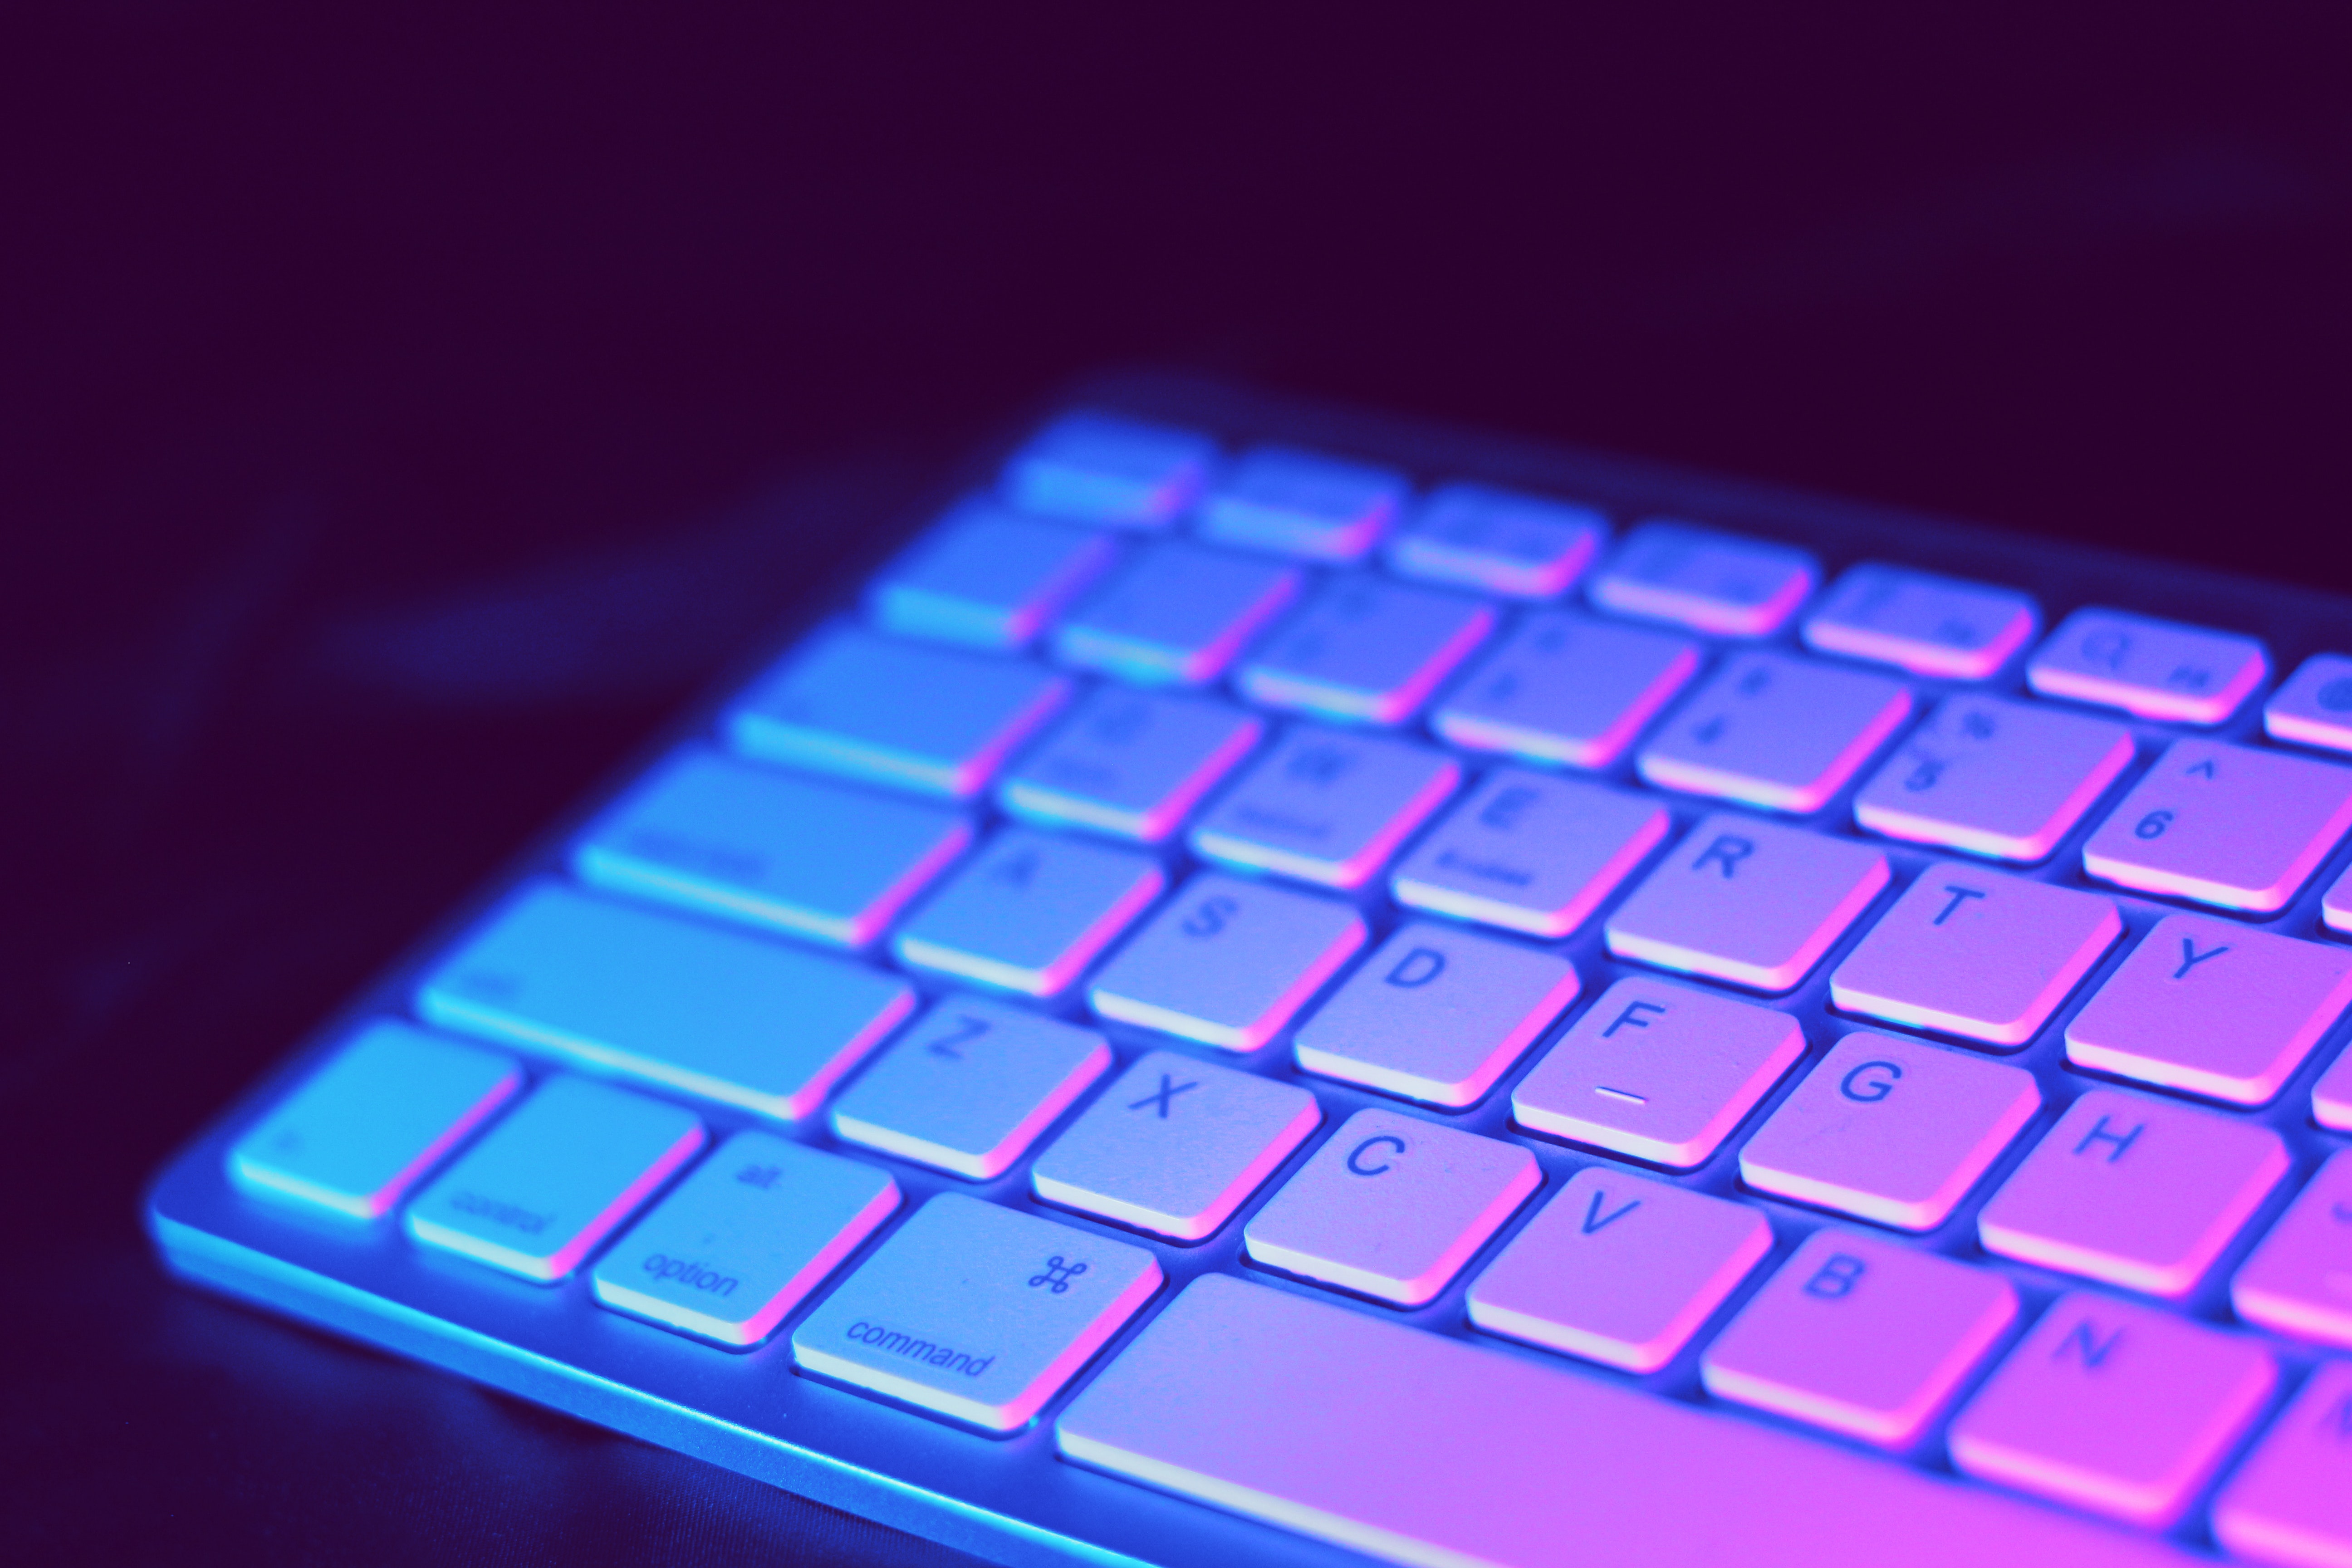 tastatur hintergrundbild,computer tastatur,lila,blau,violett,rot